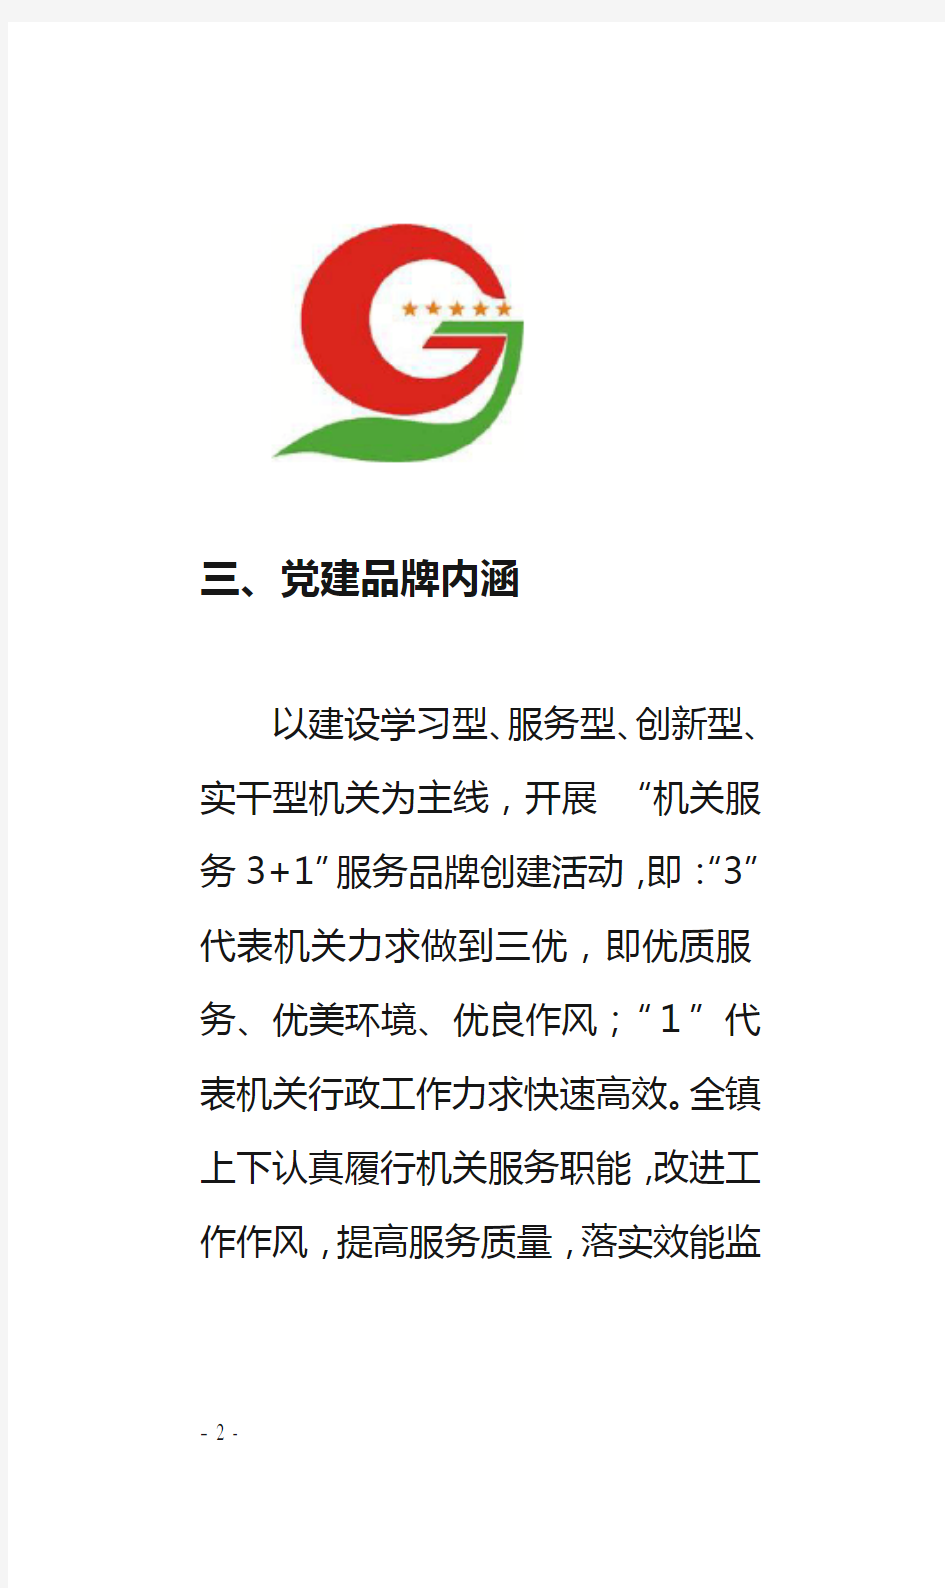 东华镇机关党建品牌创建宣传手册